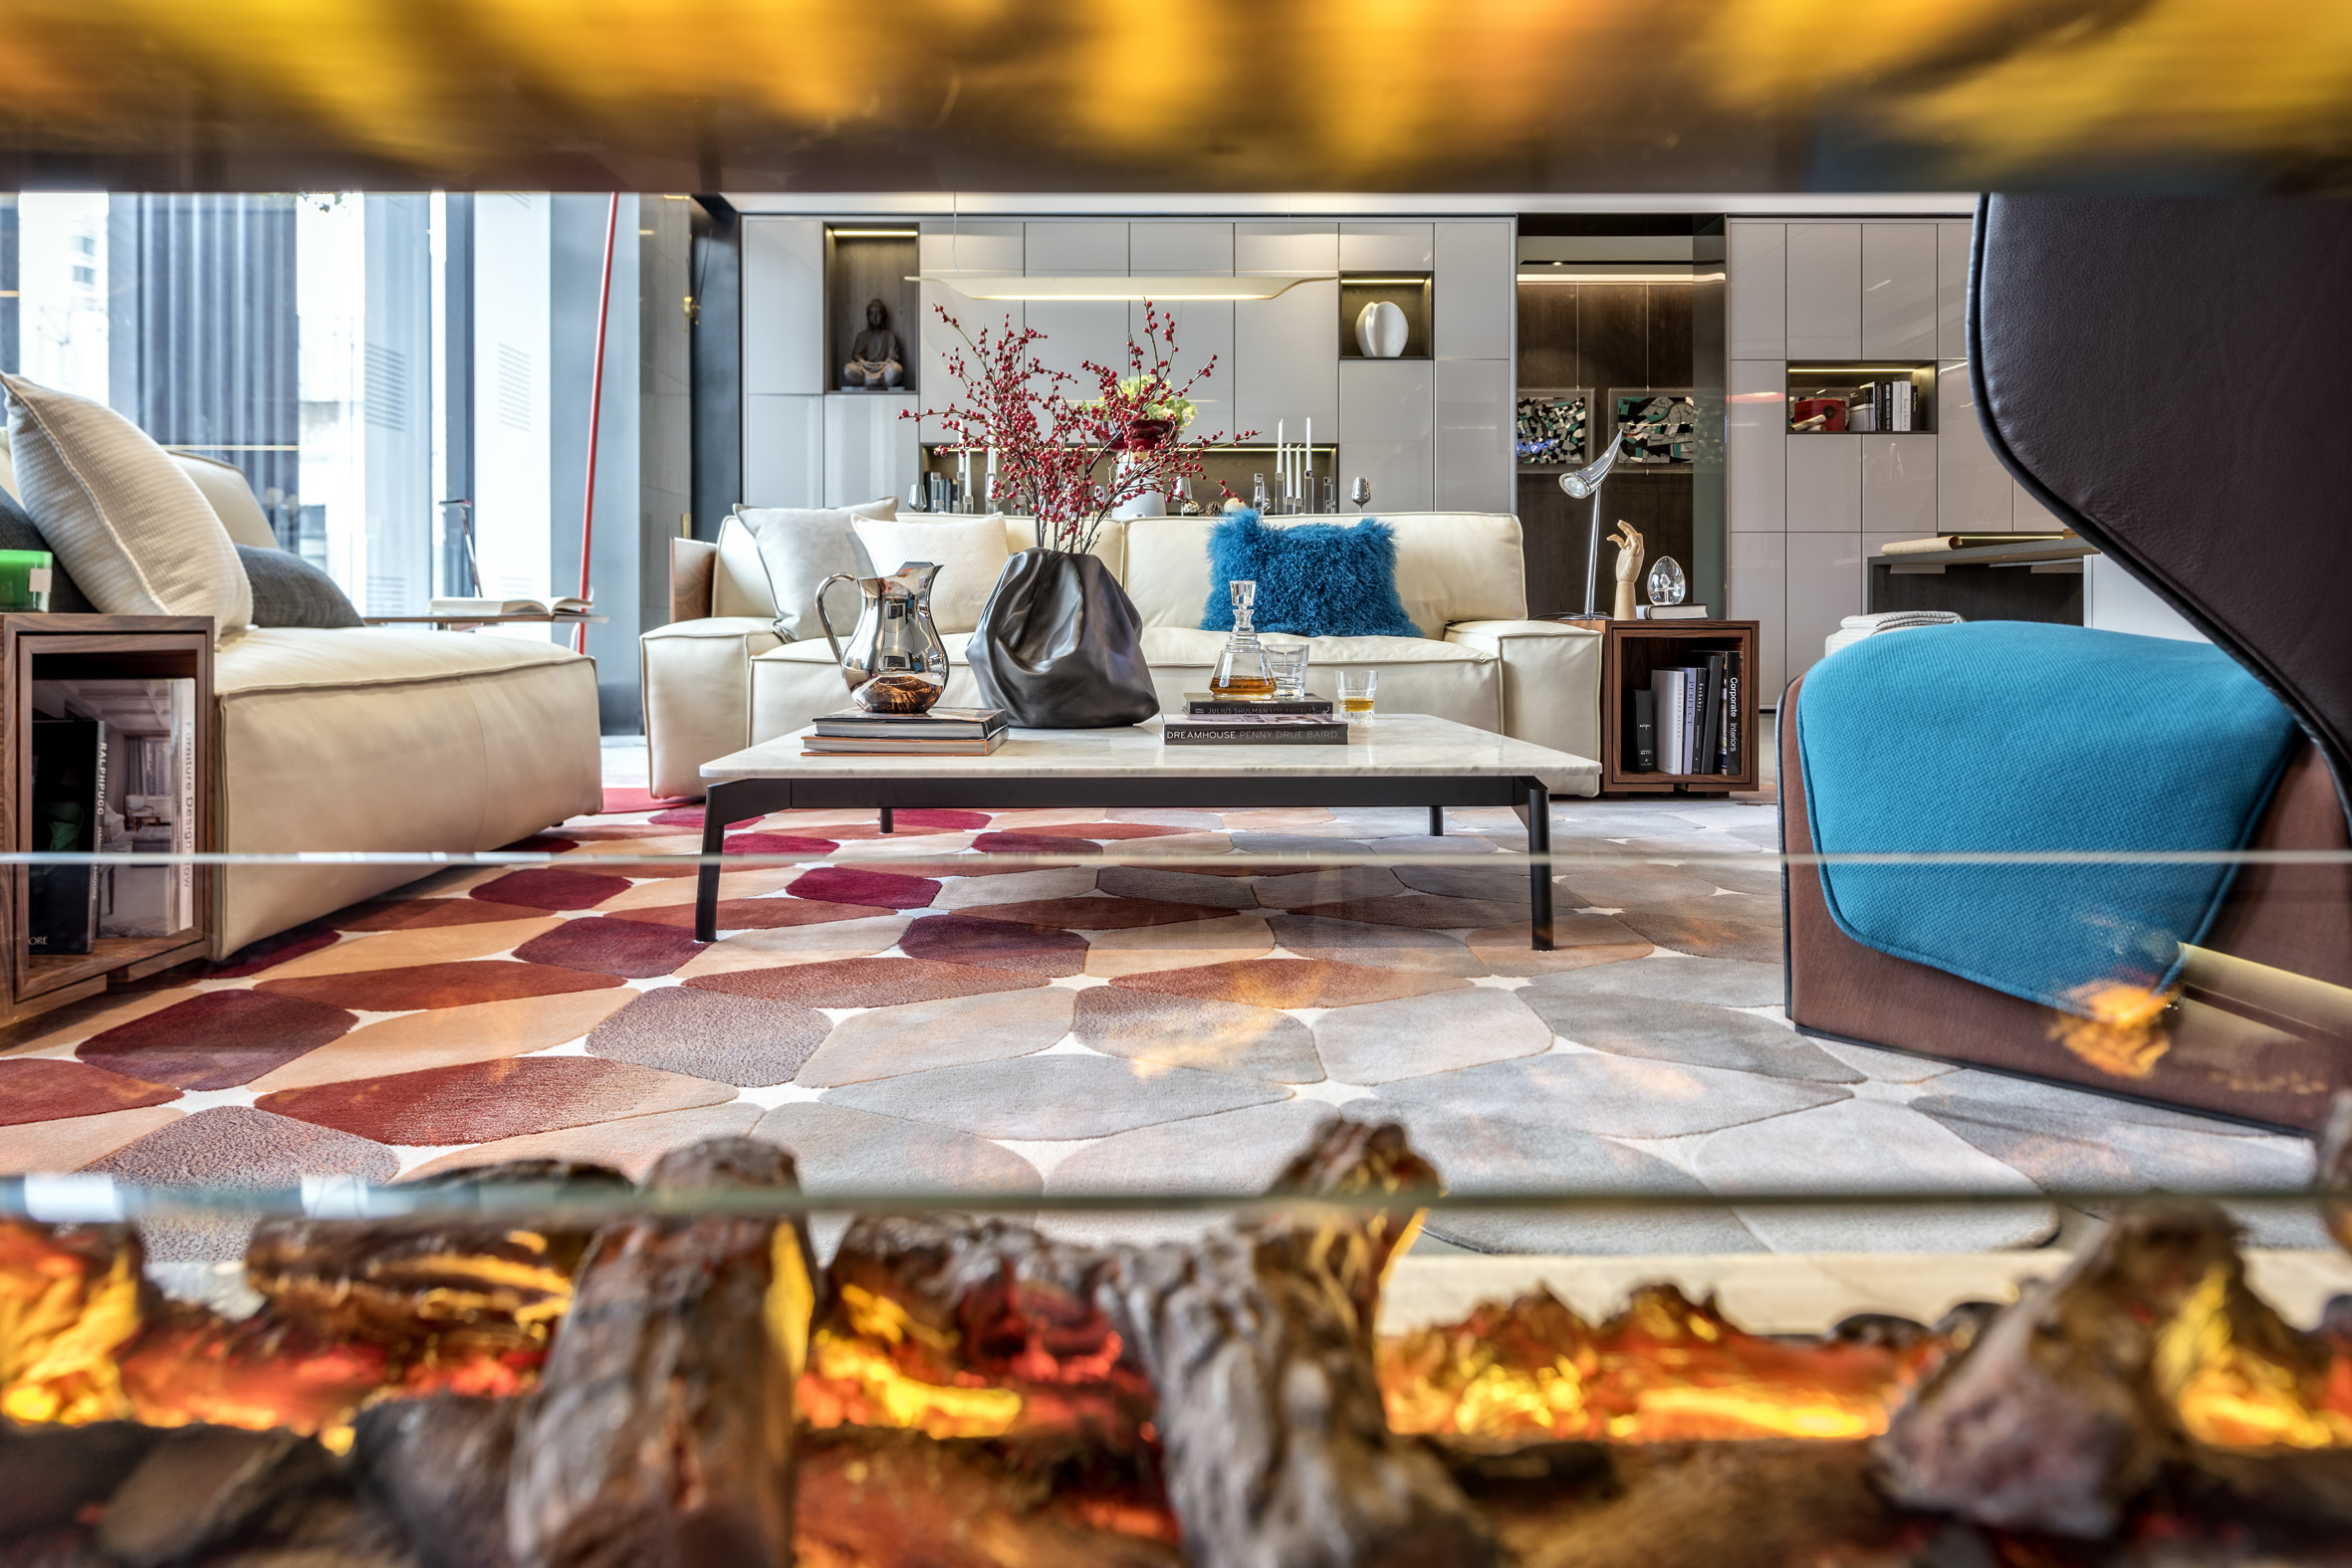 本案客廳和餐廳在一個空間， 客廳的部分相較于傳統客廳更為自由隨性，設計師選用紅色的落地燈配合地毯的色彩。